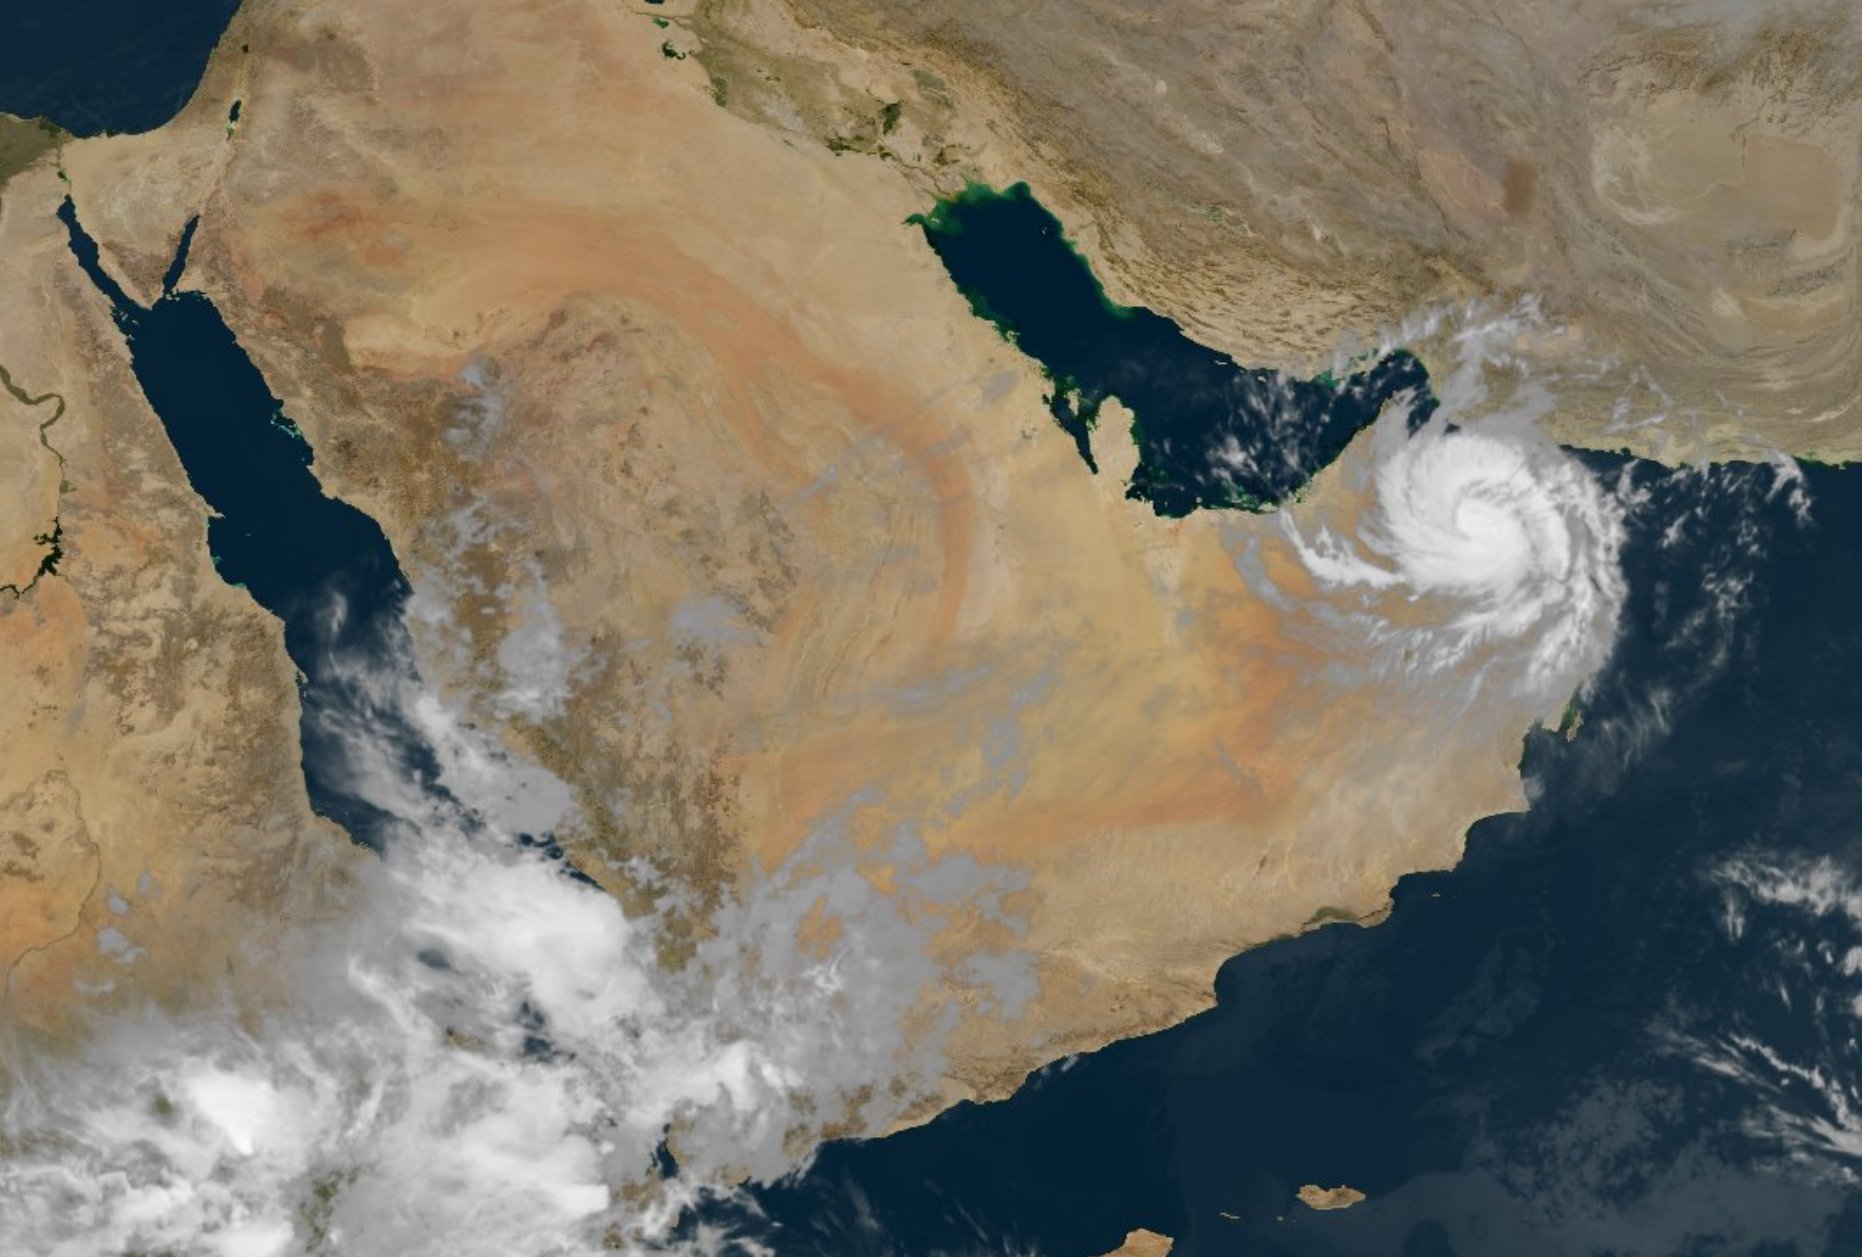 إعصار شاهين يضرب اليابس العماني بـ 3 قوى